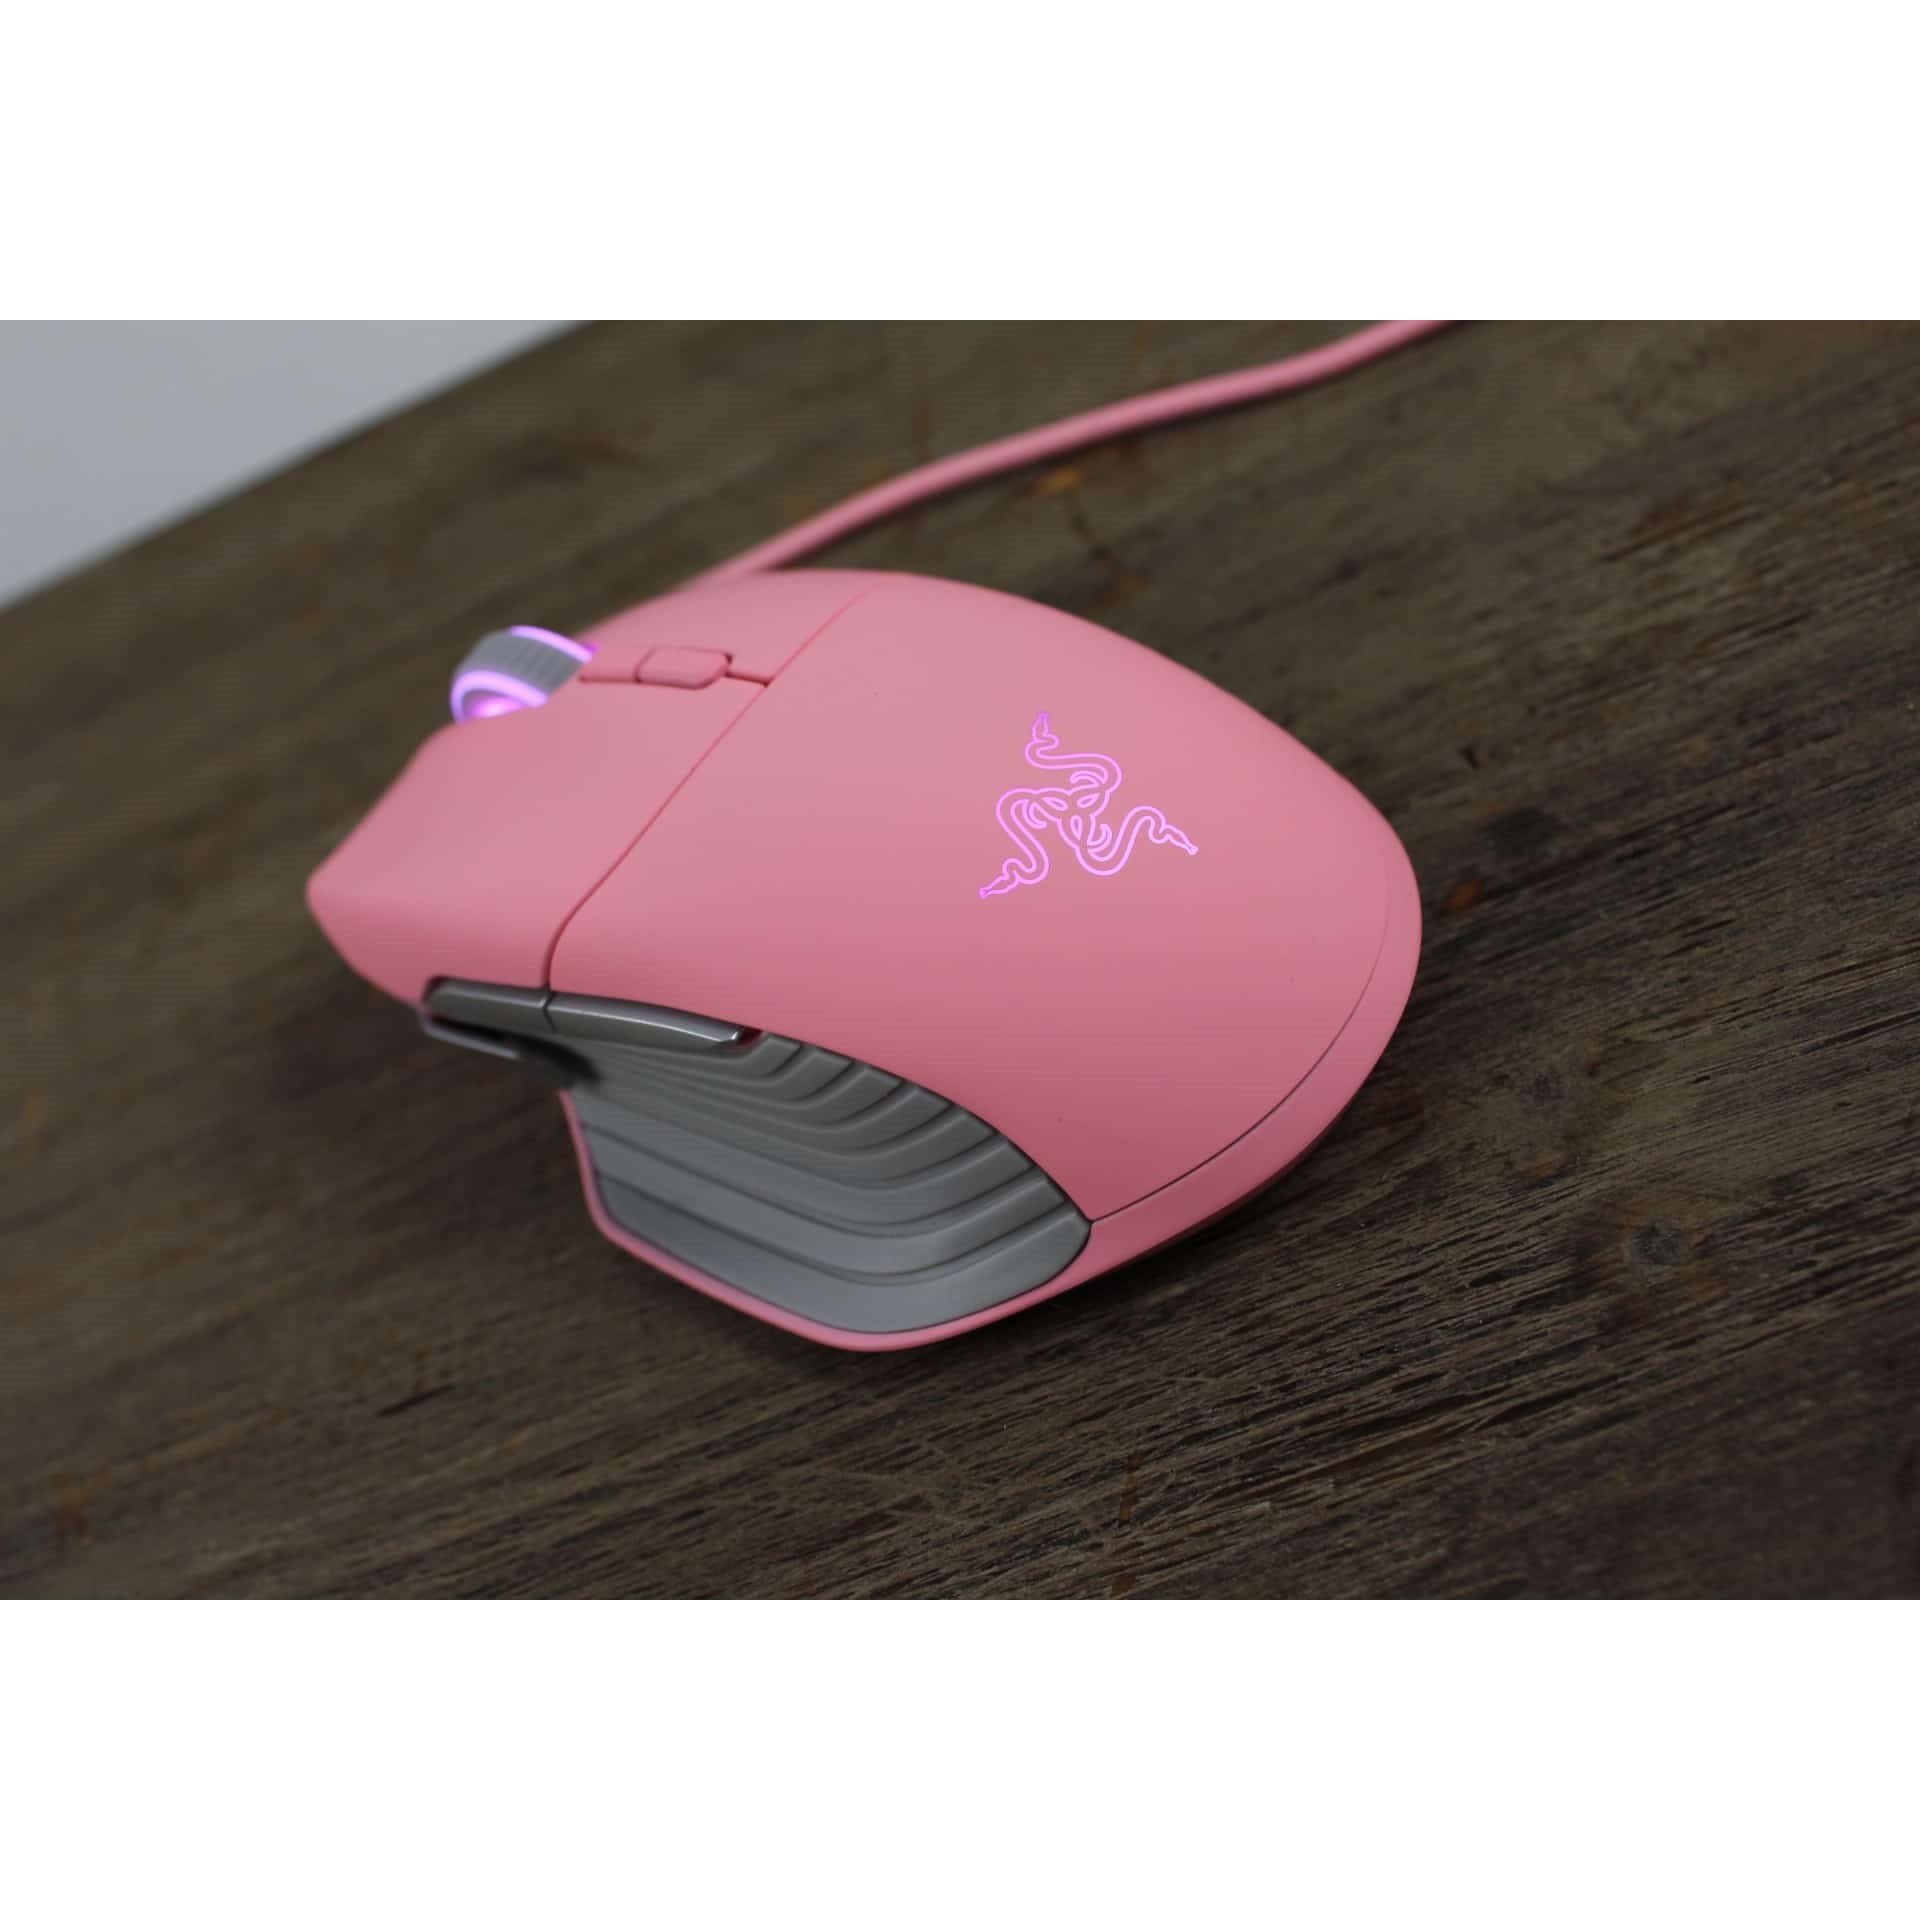 Розовая беспроводная мышь. Razer Basilisk Quartz. Беспроводная мышка Razer Pink. Razer Basilisk Pink. Razer Quartz мышка.